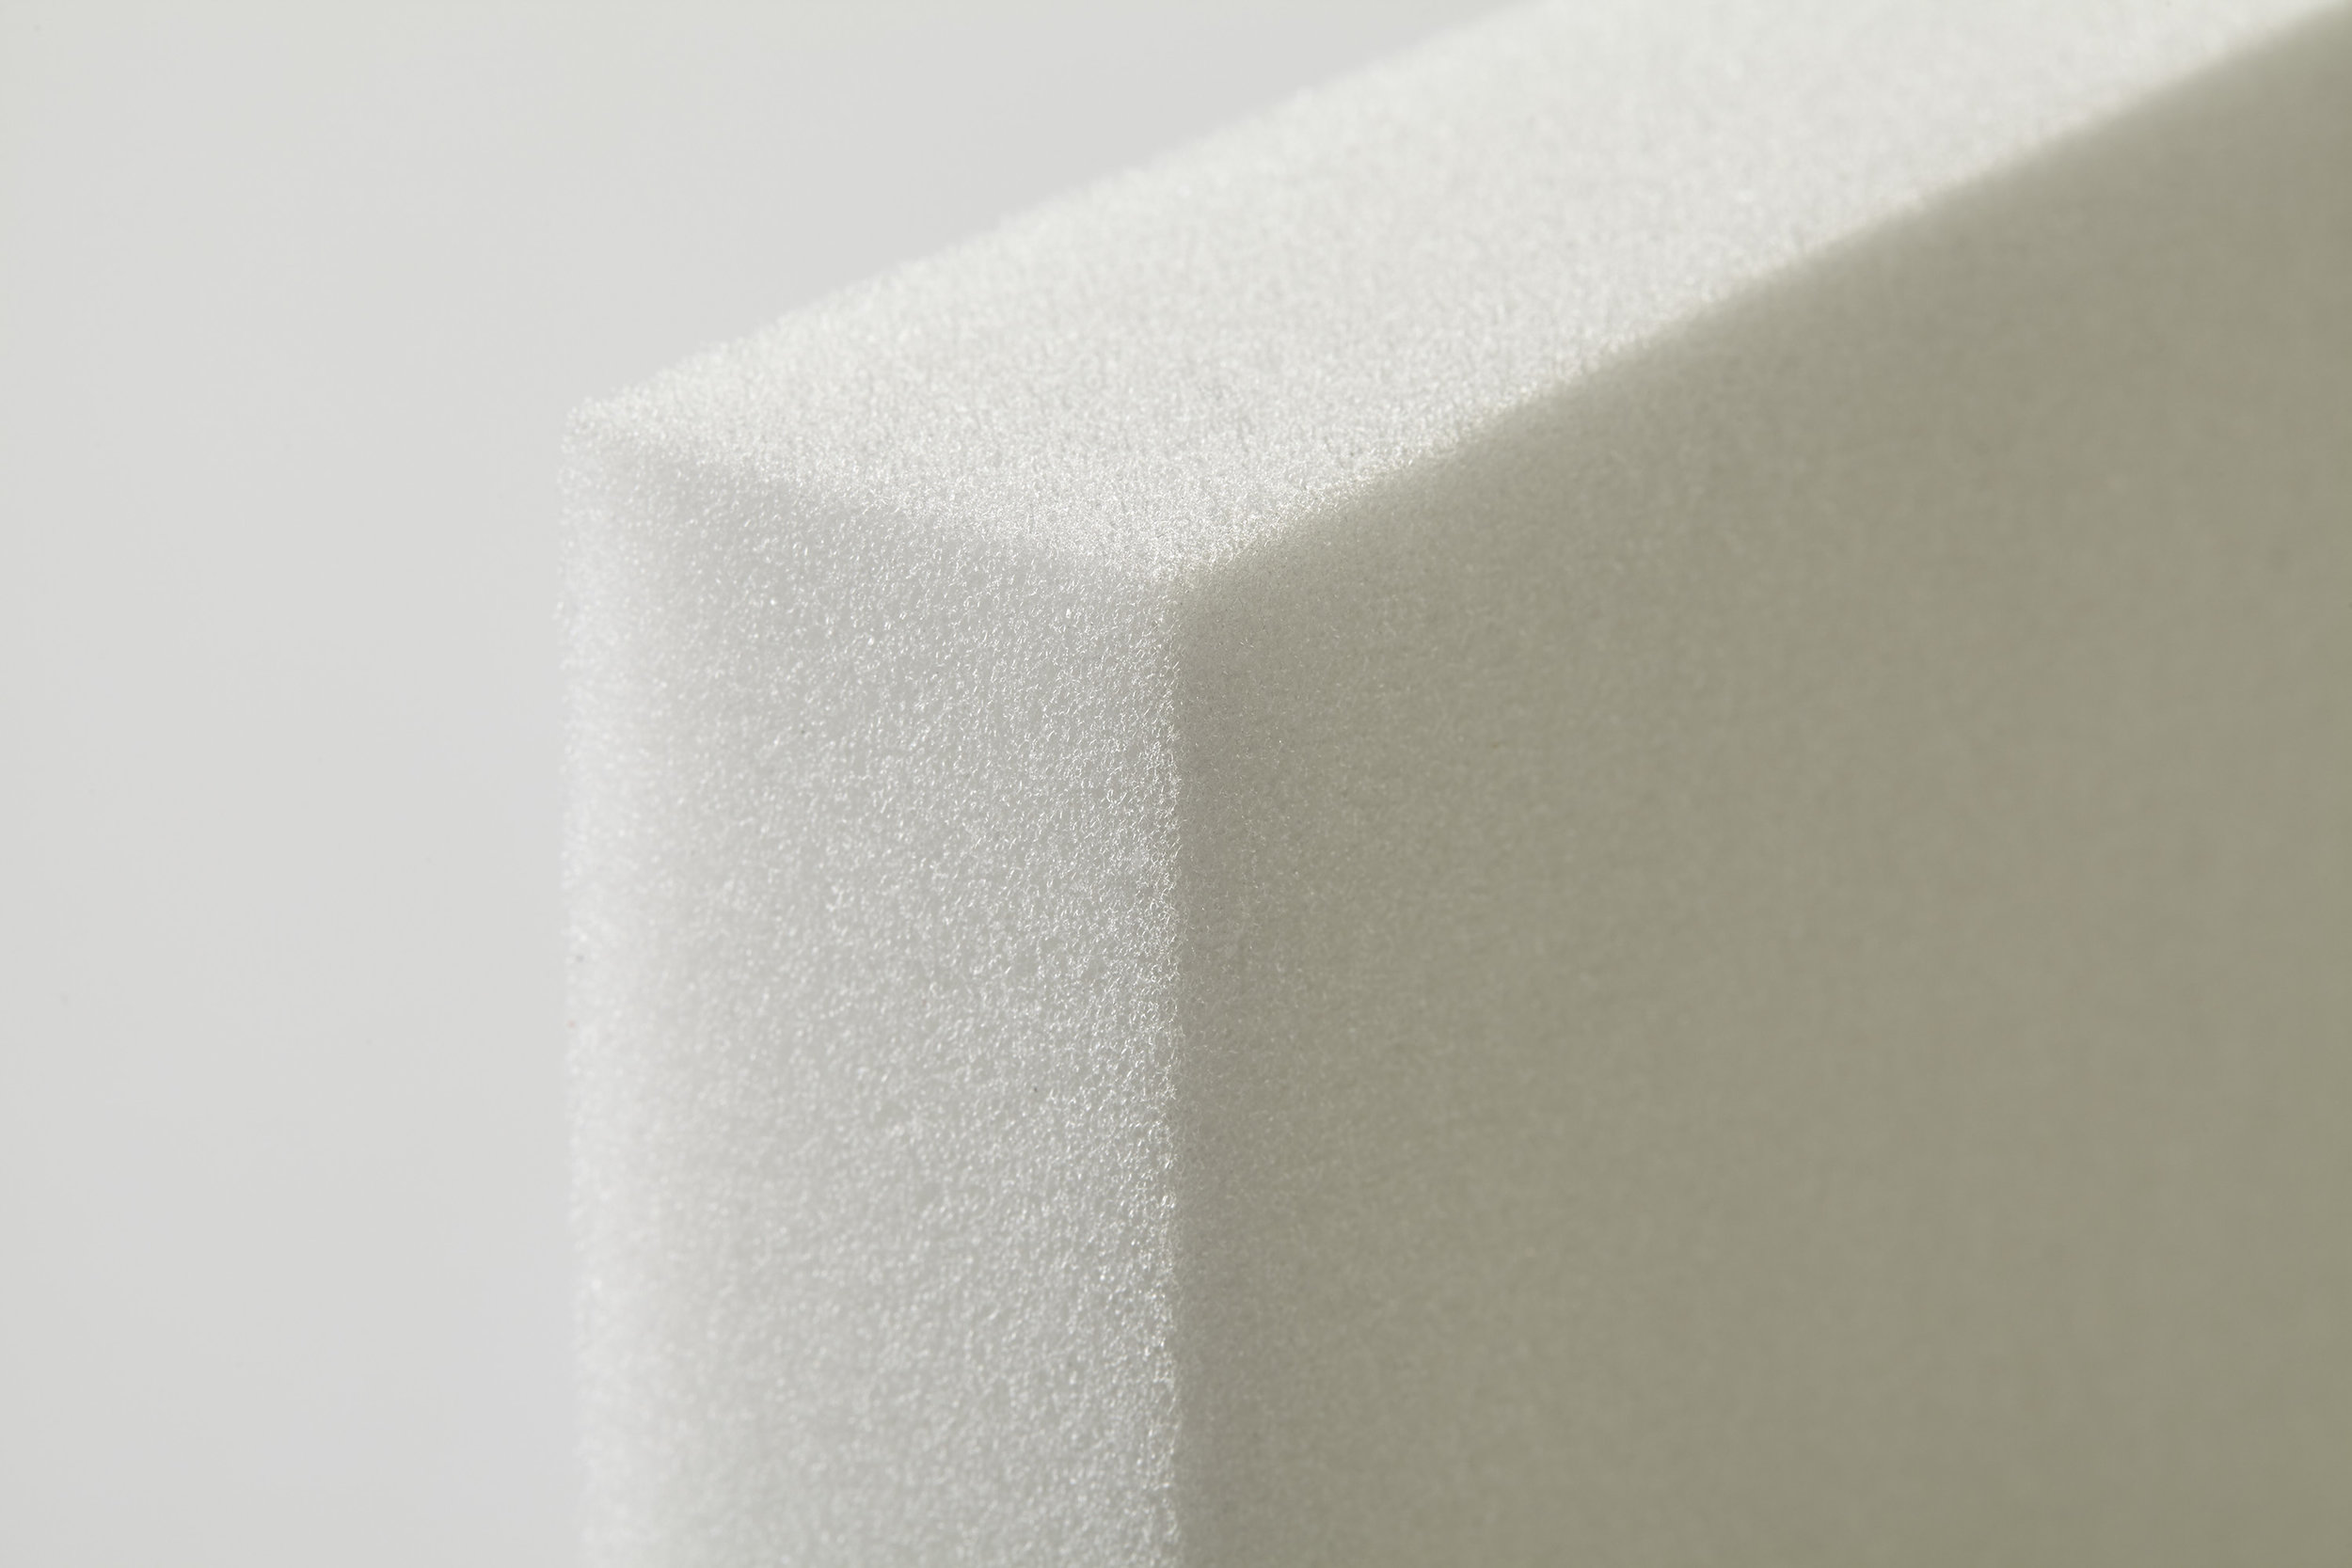 Seat Plus - 1.5 LB density Upholstery Foam Sheets (Good) — Bestway Foam